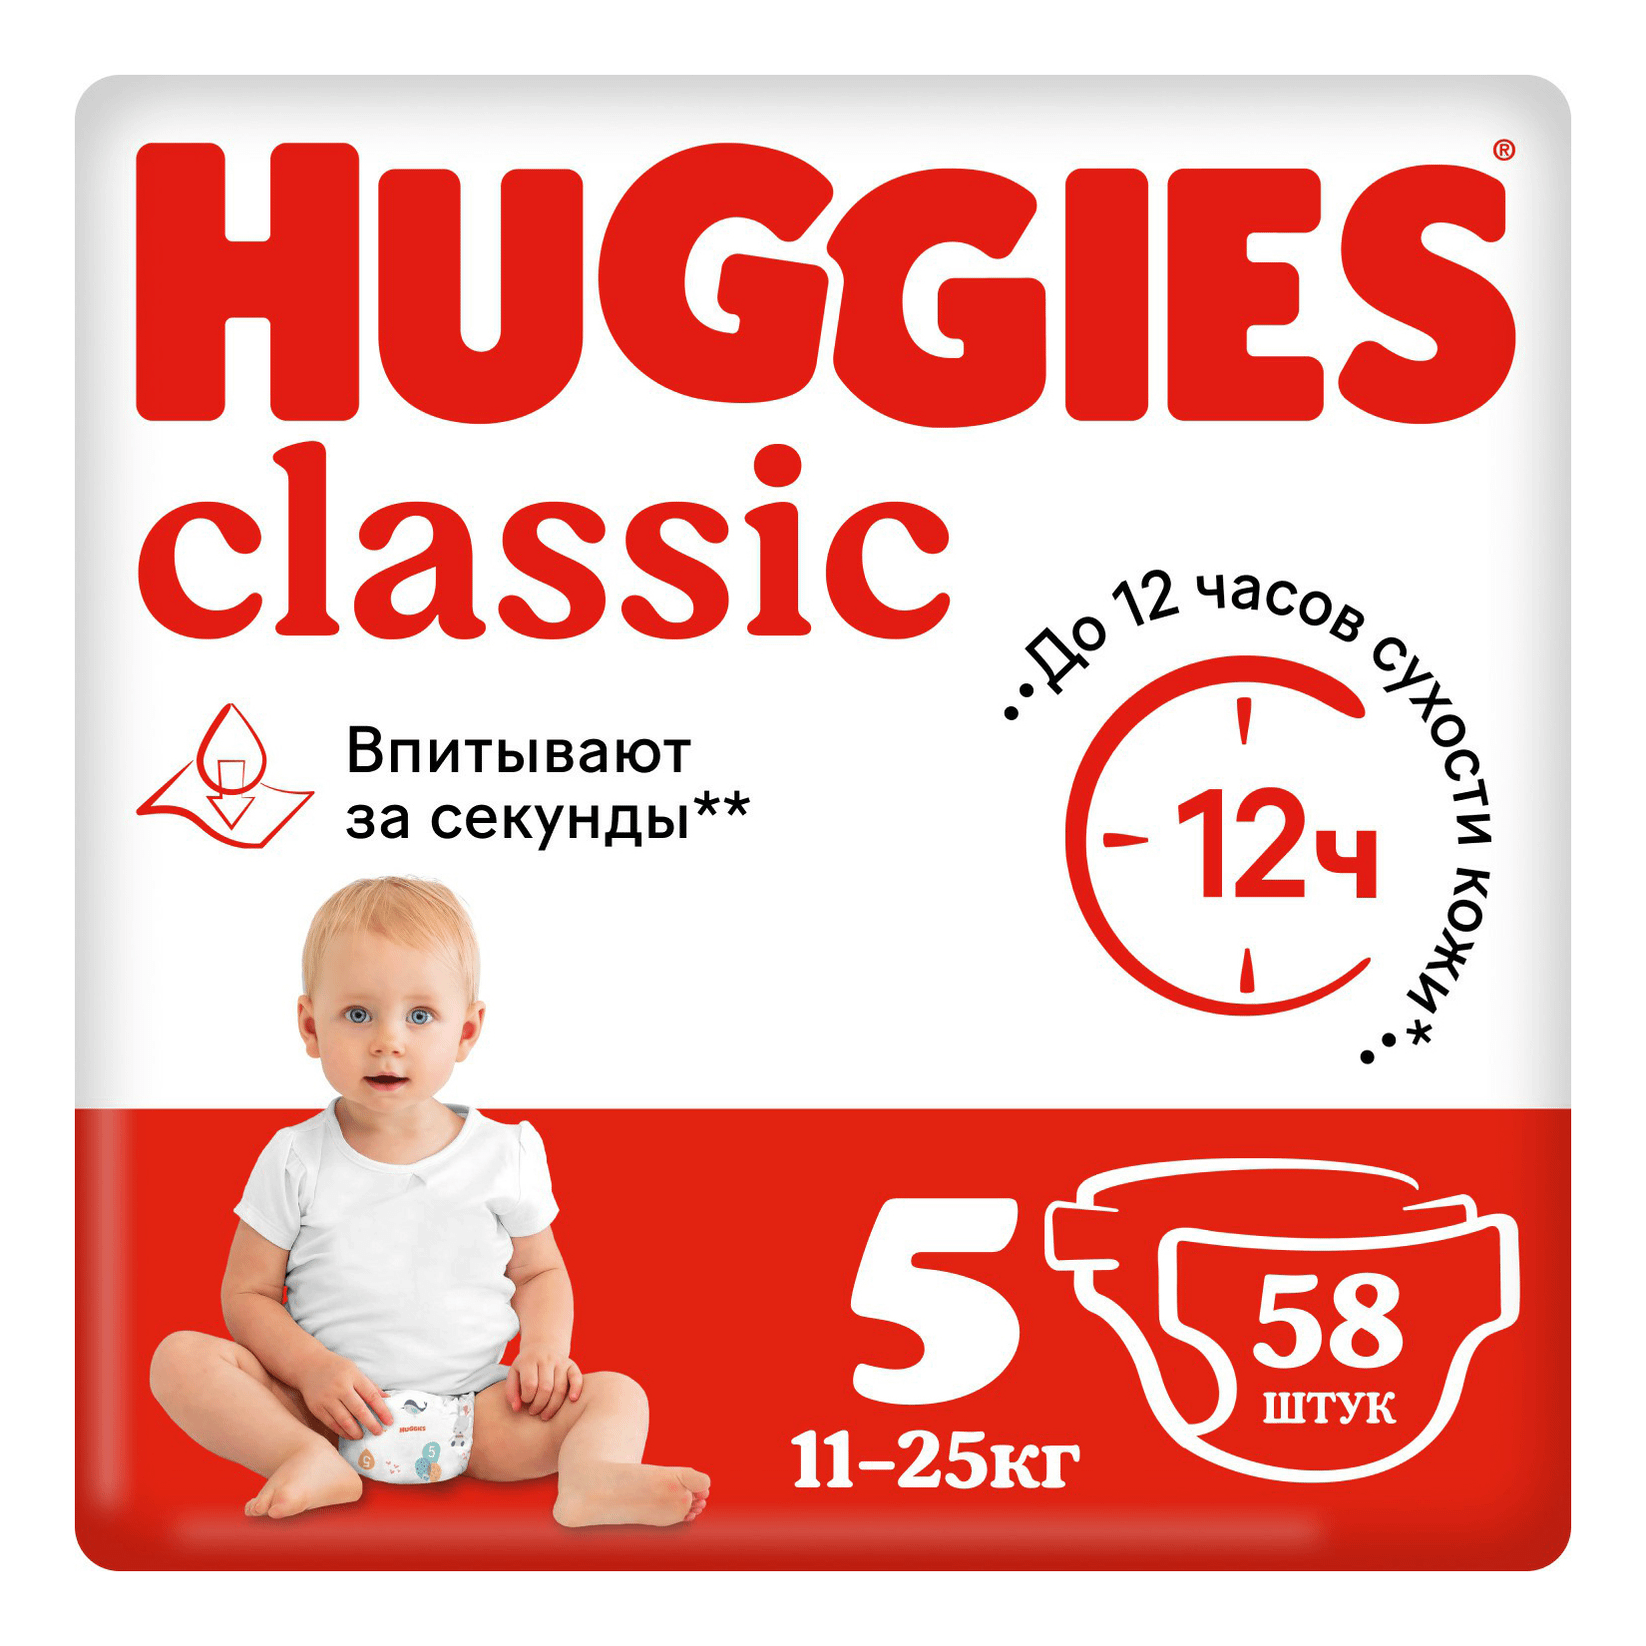 Подгузники Huggies Classic 5 (11-25 кг), 58 шт подгузники huggies classic 5 11 25 кг 11 шт